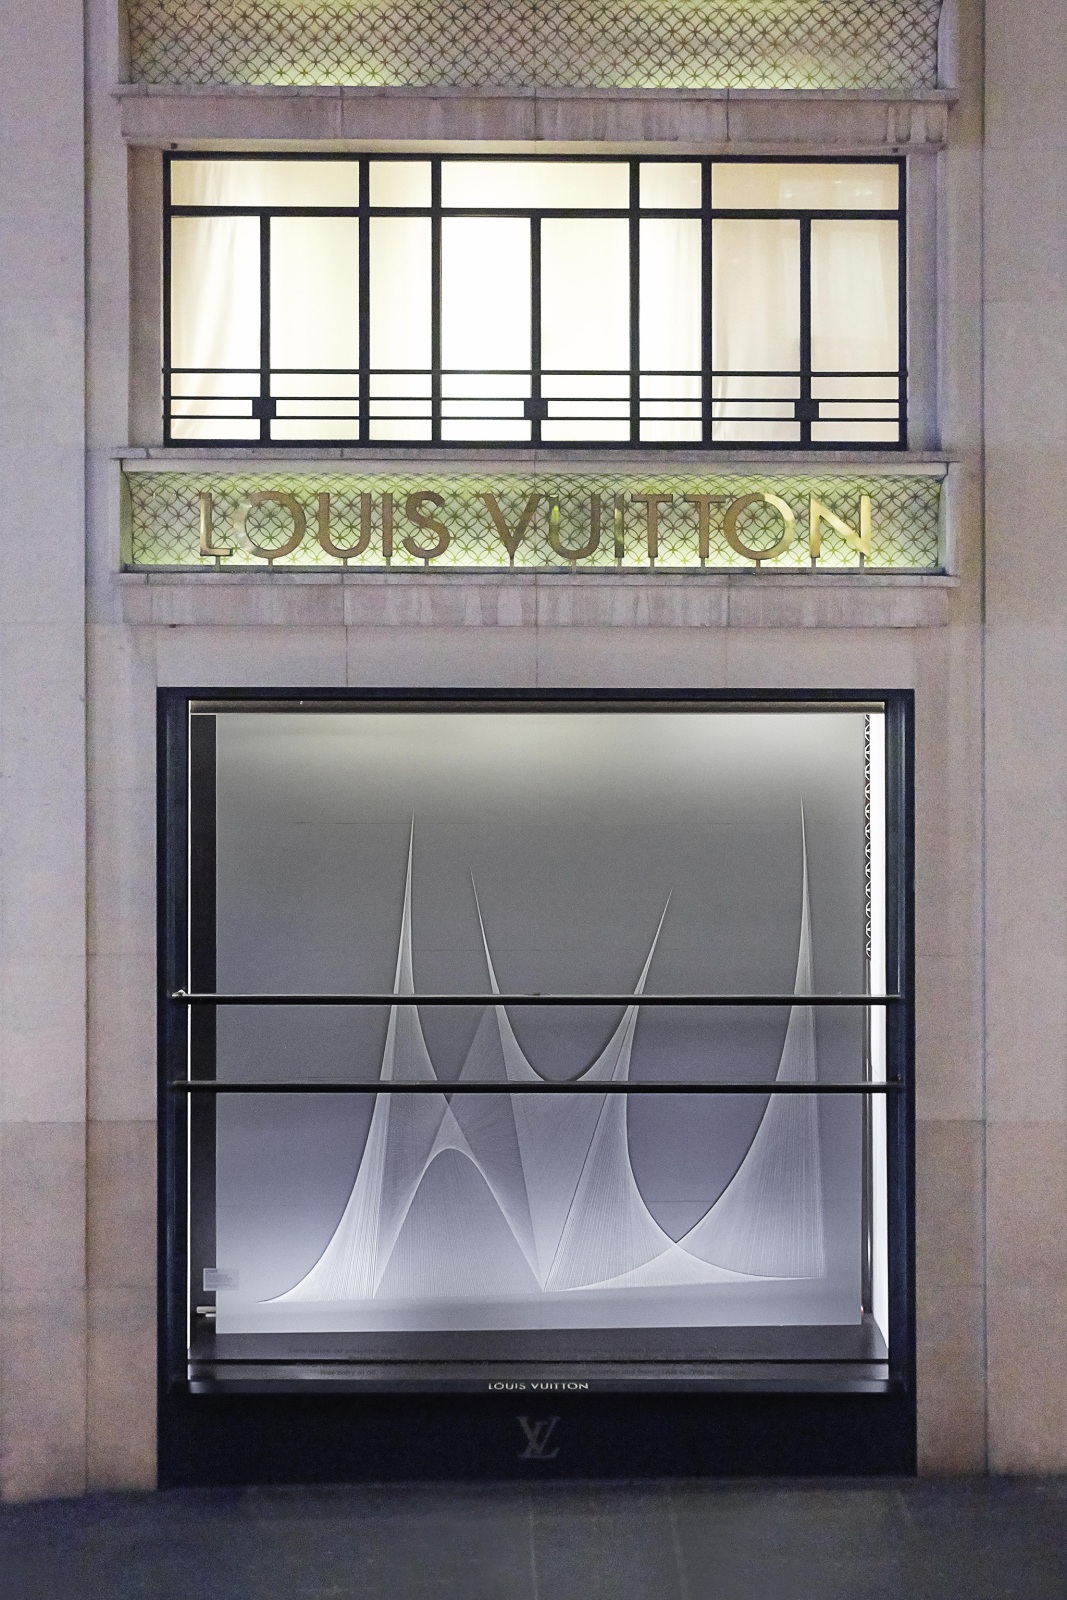 <div class="image_caption_container"><div class="image_caption"><p><strong>Hyperboloïde III</strong>, 2015</p><p><strong>Le fil rouge</strong>, Espace CulturelLouis Vuitton Paris, 2015</p><p>© Pauline Guyon / Louis Vuitton</p></div></div>